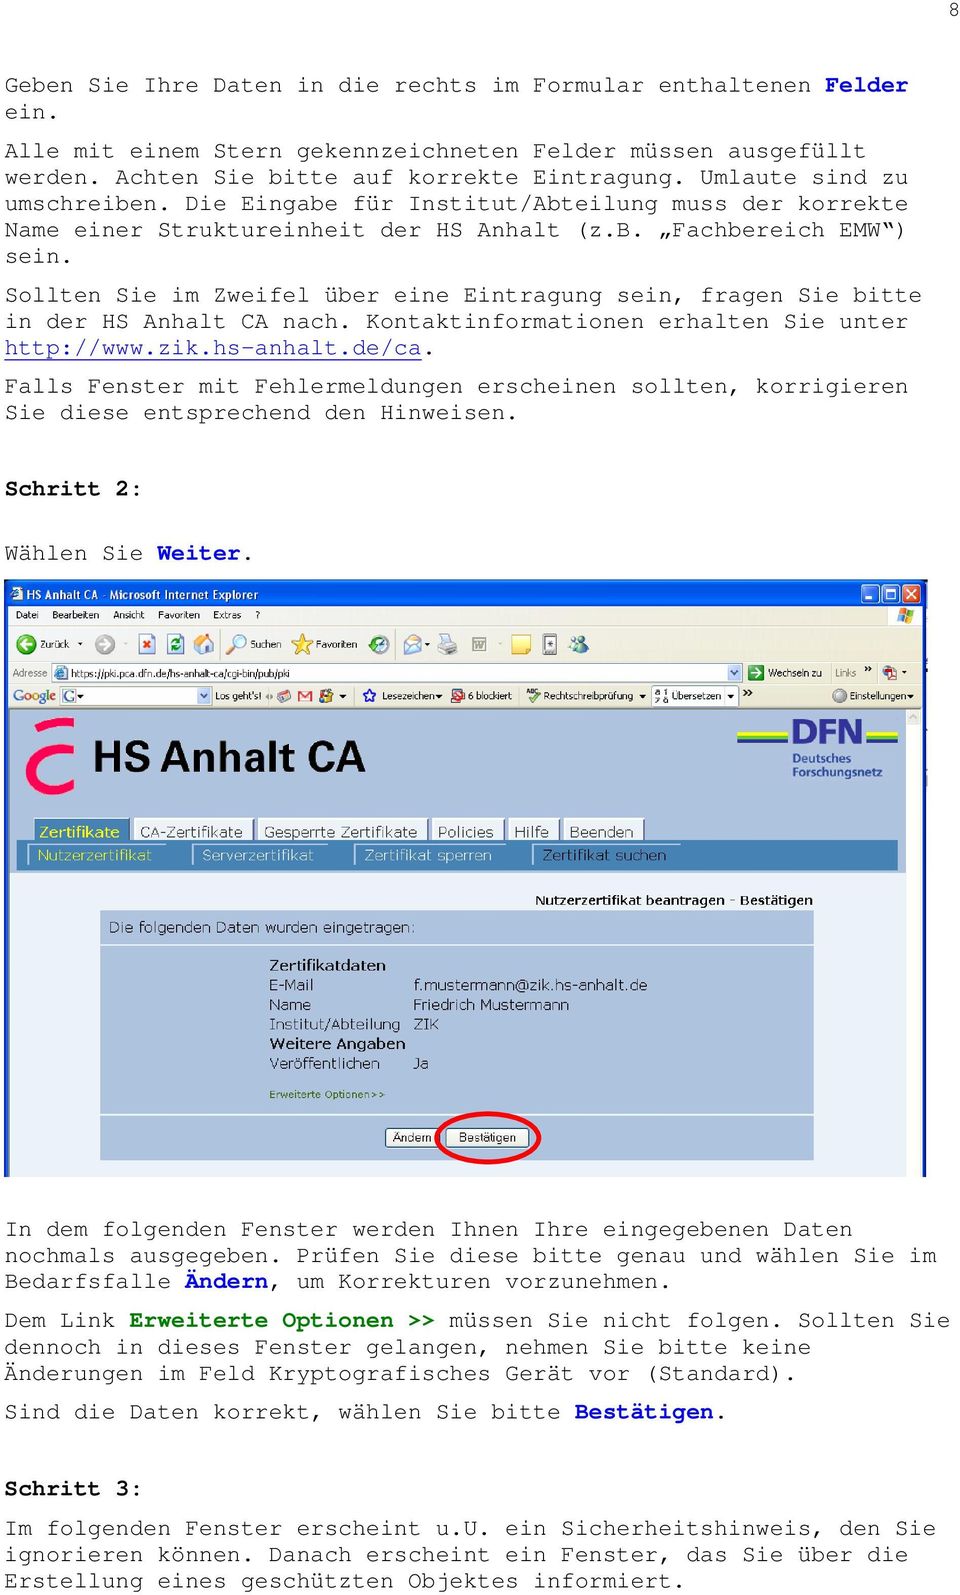 Sollten Sie im Zweifel über eine Eintragung sein, fragen Sie bitte in der HS Anhalt CA nach. Kontaktinformationen erhalten Sie unter http://www.zik.hs-anhalt.de/ca.